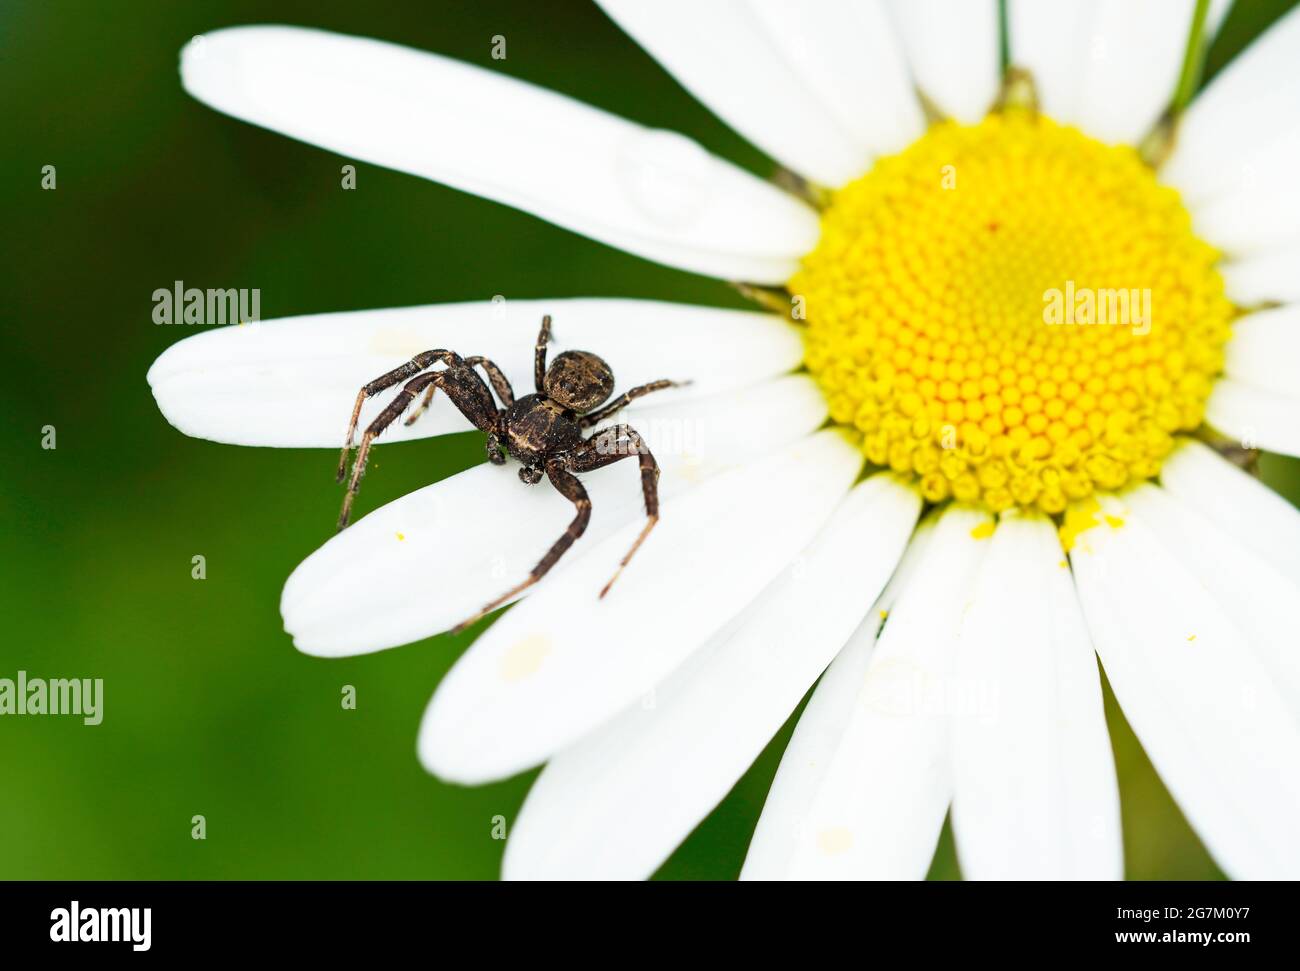 Krabbenspinne auf weißen Blütenblättern. Spinne Nahaufnahme einer Blume in natürlicher Umgebung. Grüner Hintergrund. Thomisidae. Arachnida. Stockfoto